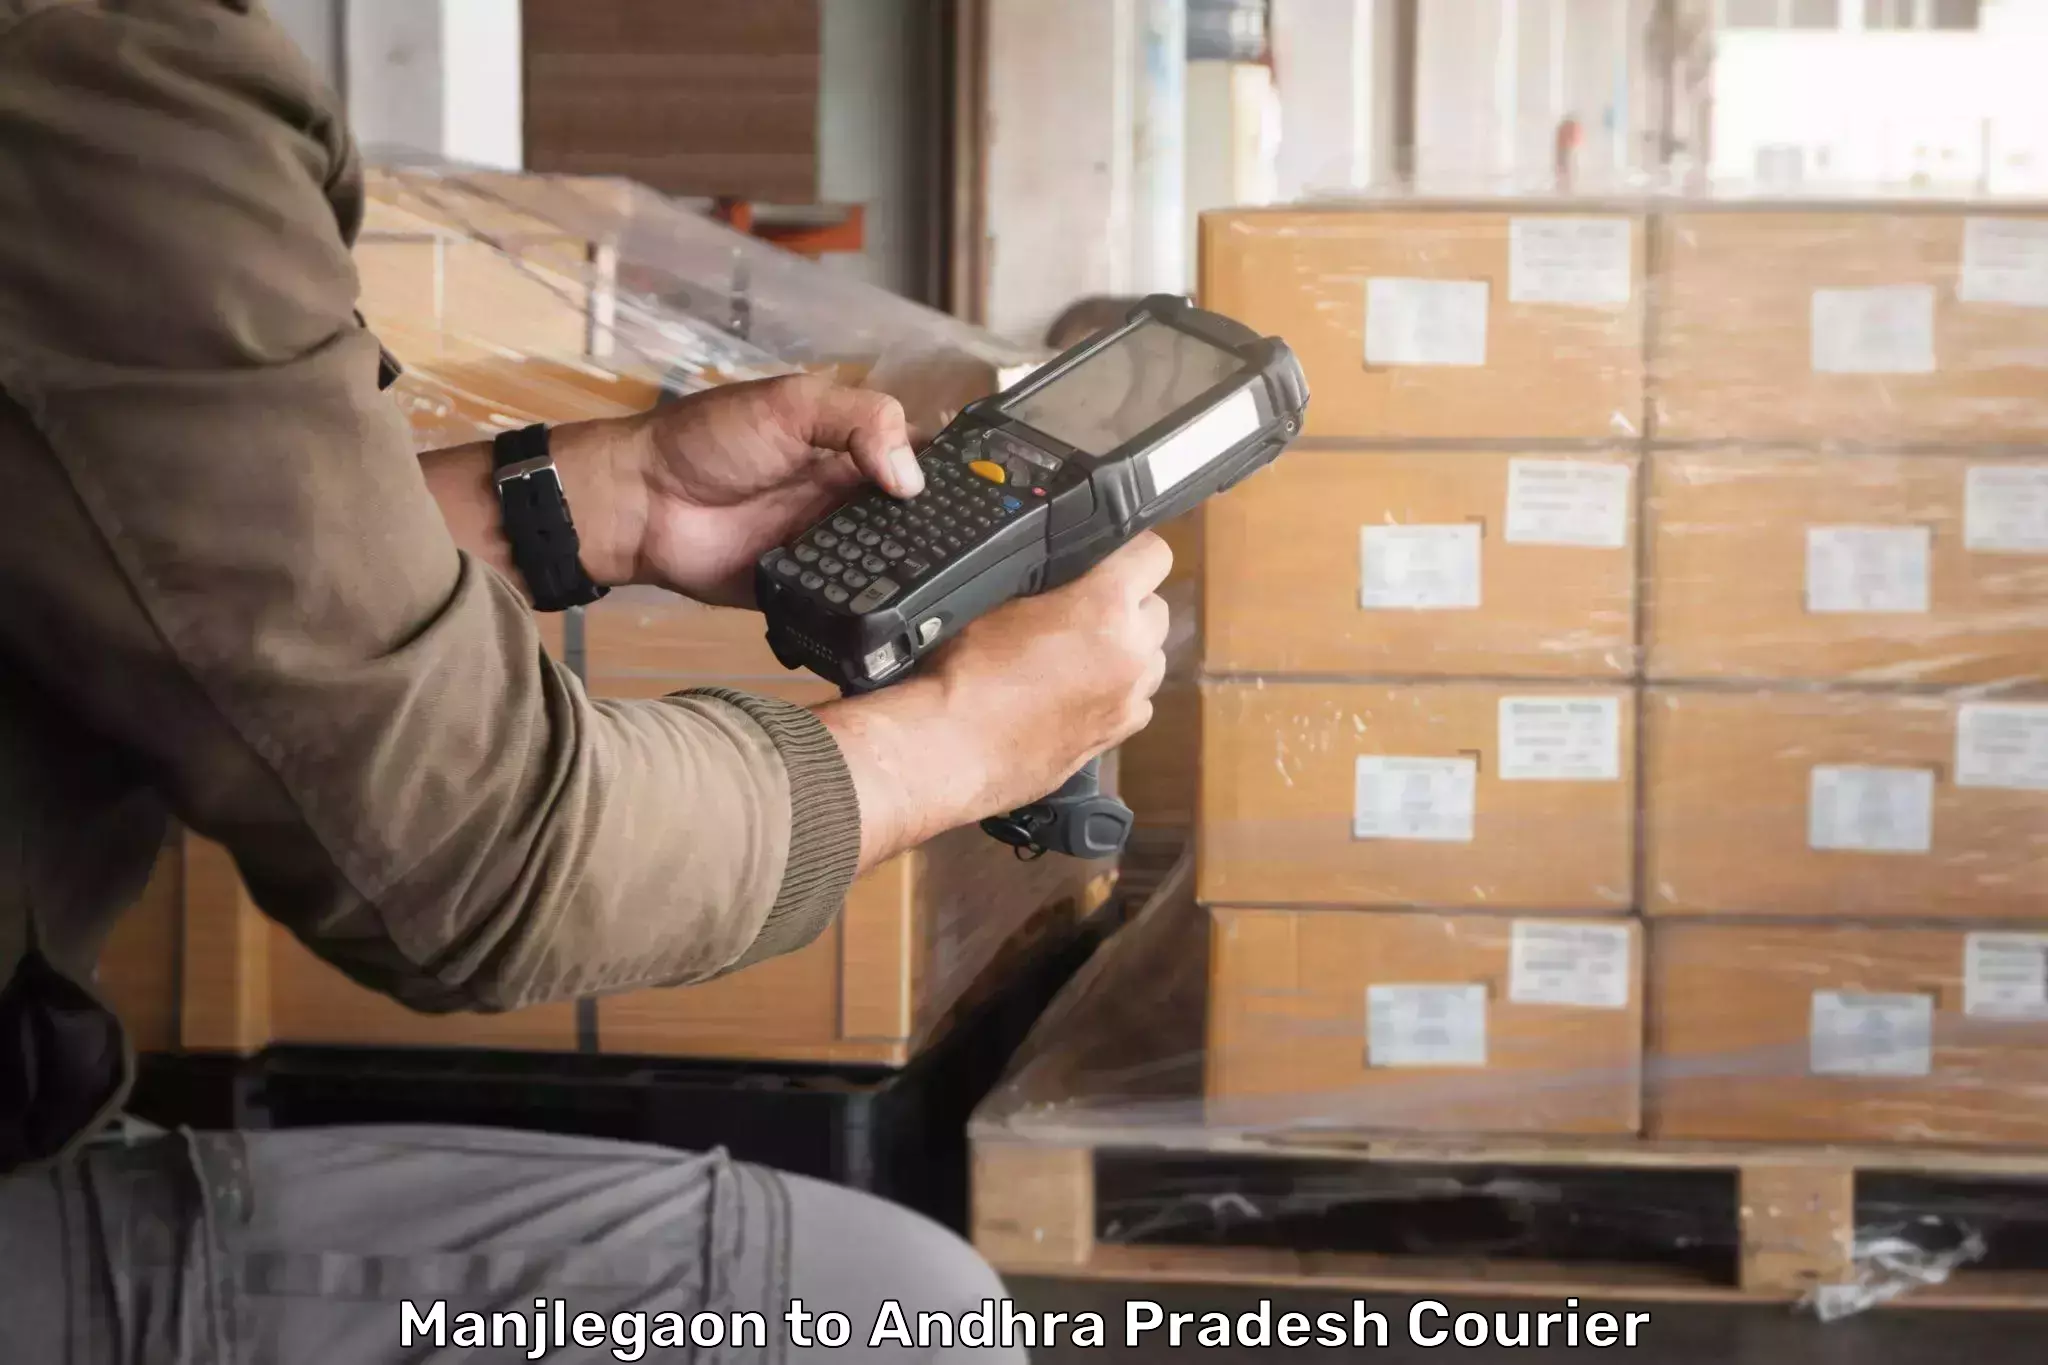 Professional courier services Manjlegaon to Pedapadu